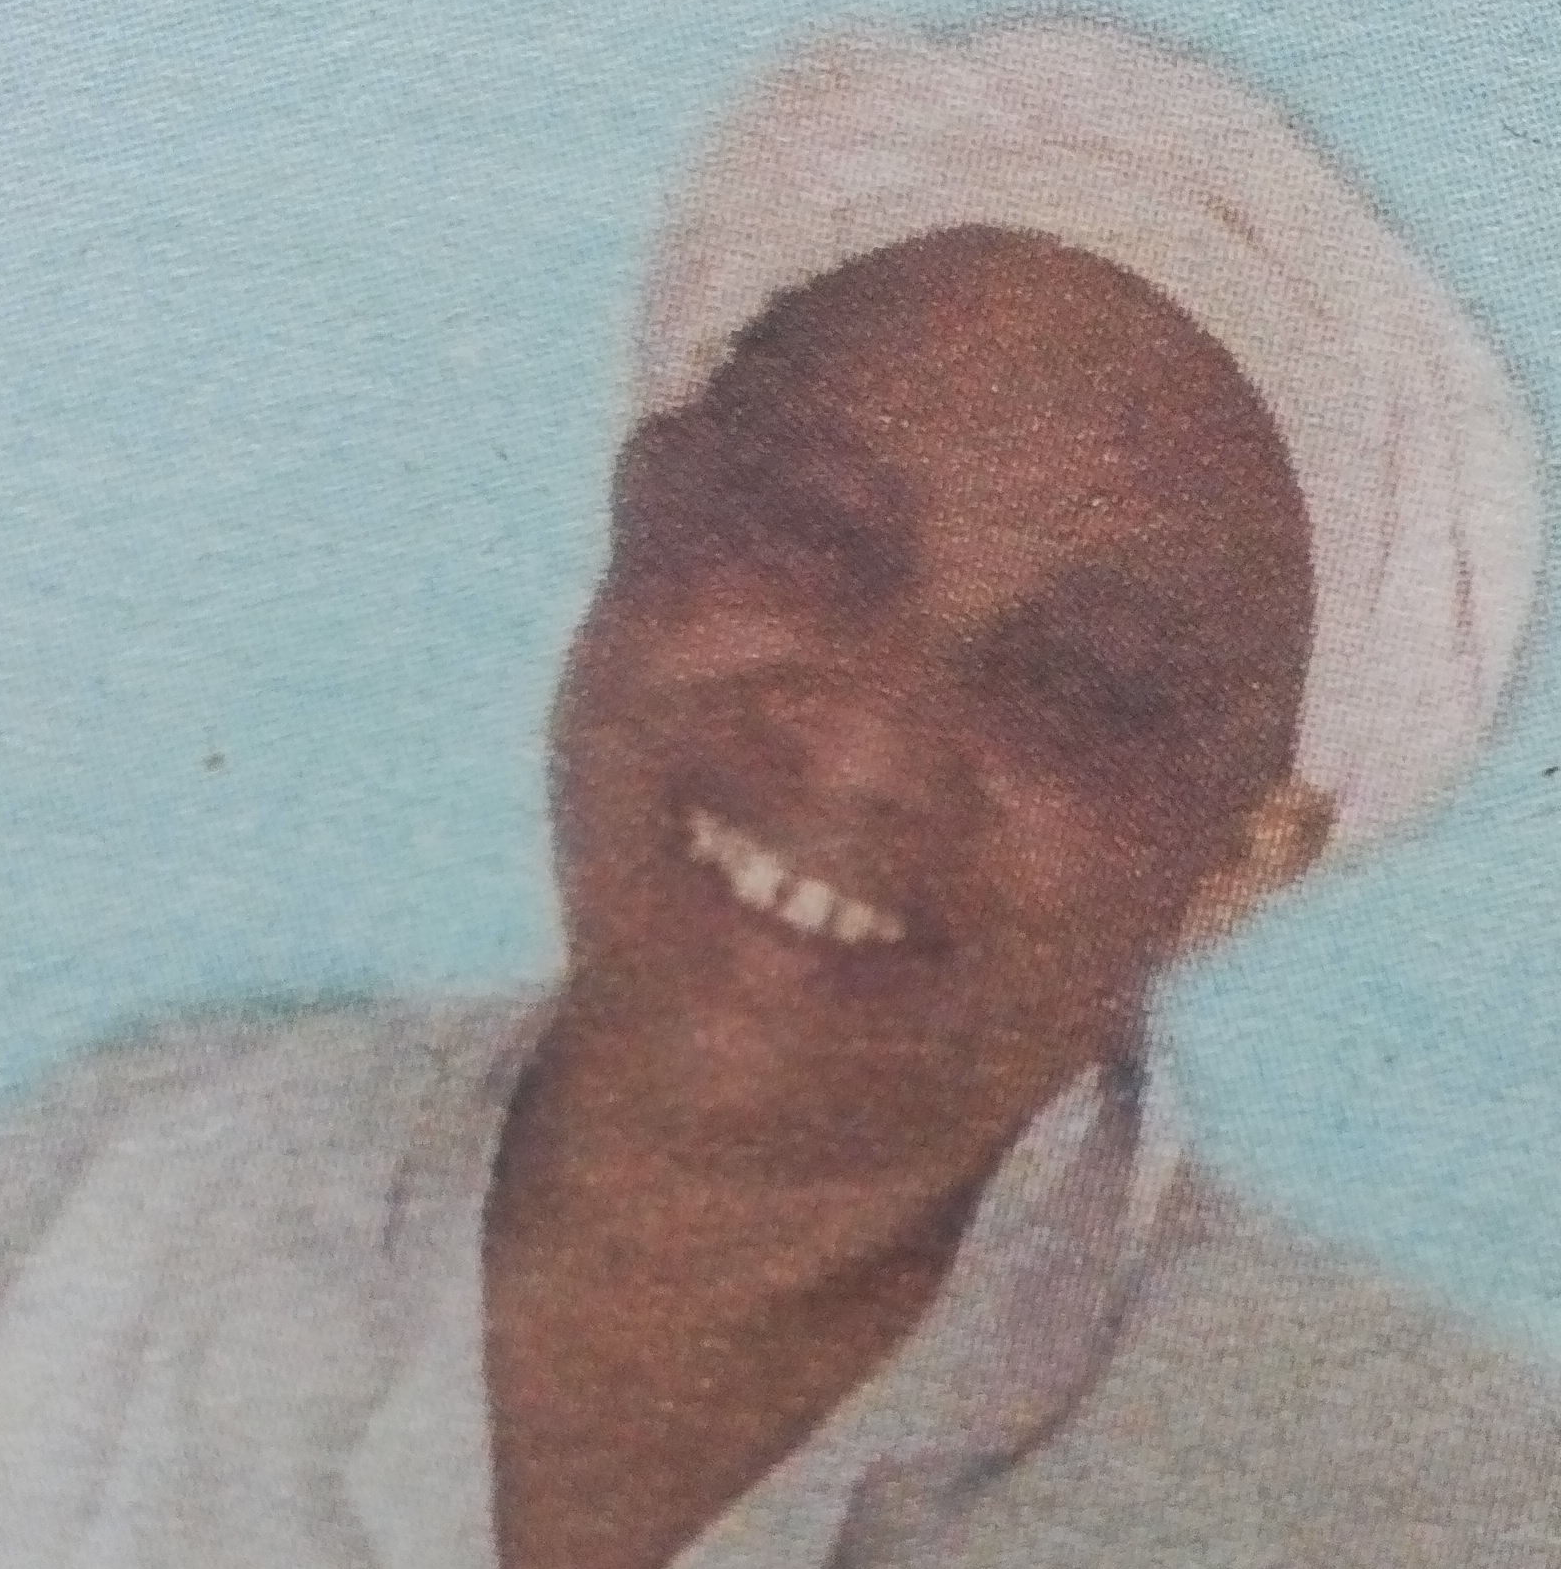 Obituary Image of Esther Nyambura Kang’ethe (Mama Sam)